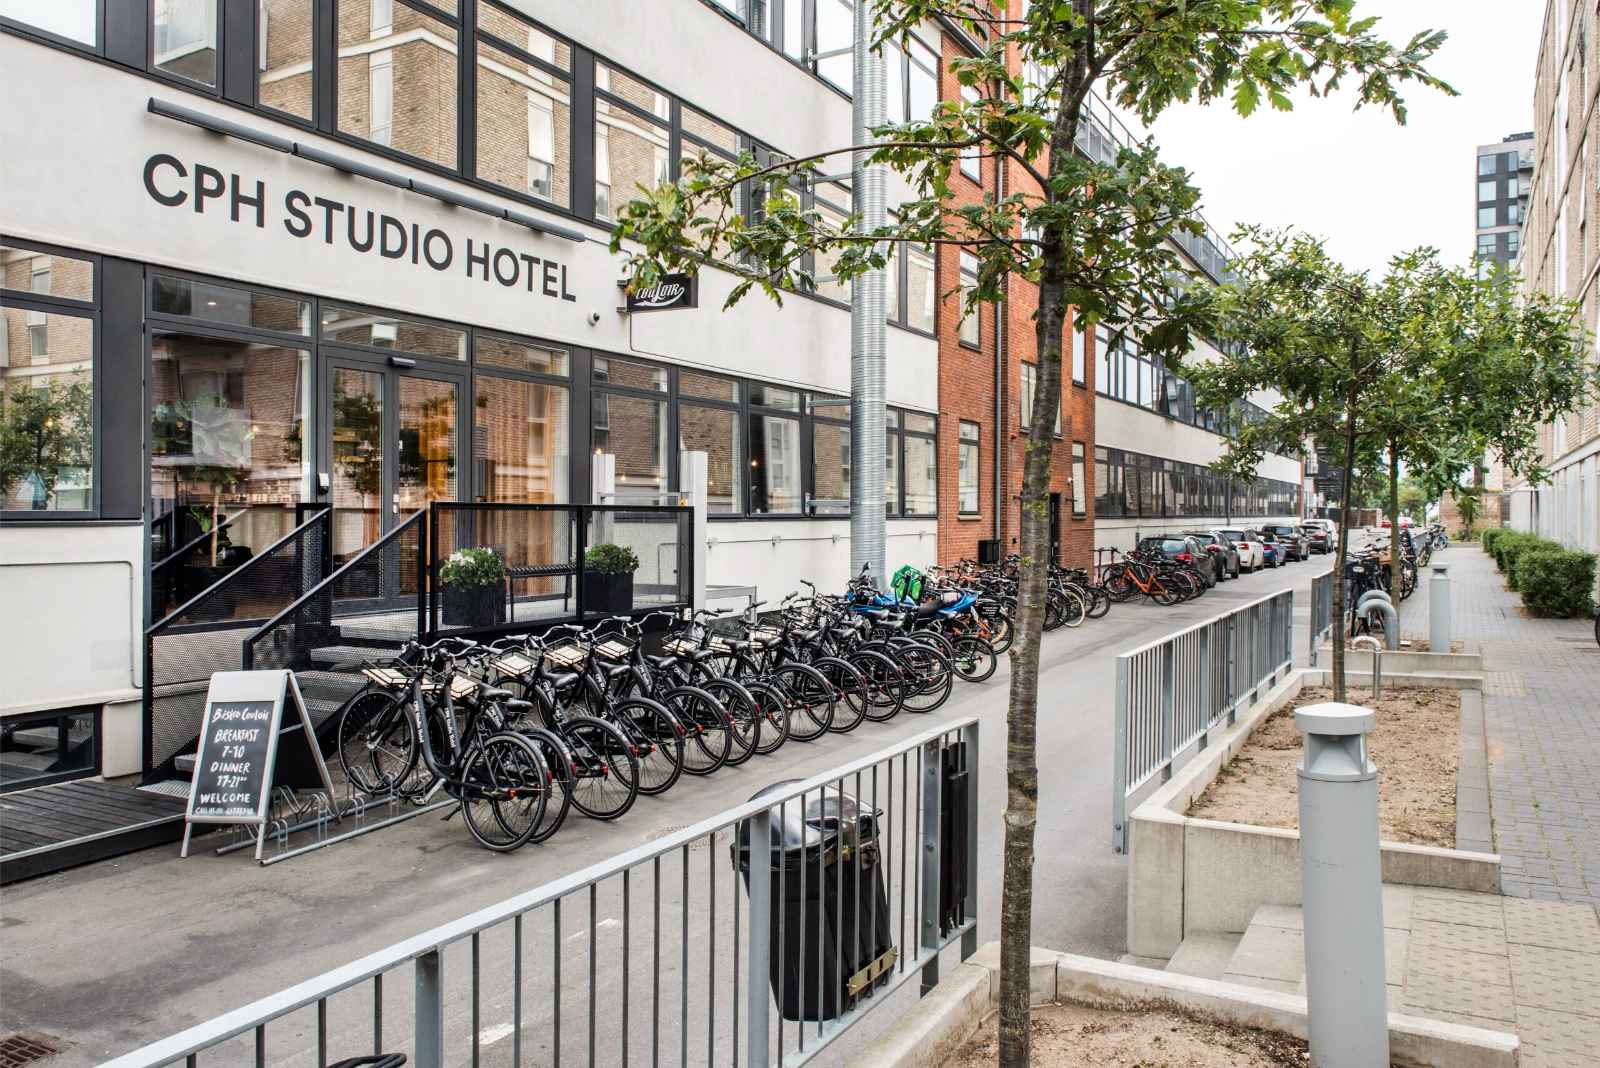 Where to stay in Copenhagen CPH Studio Hotel